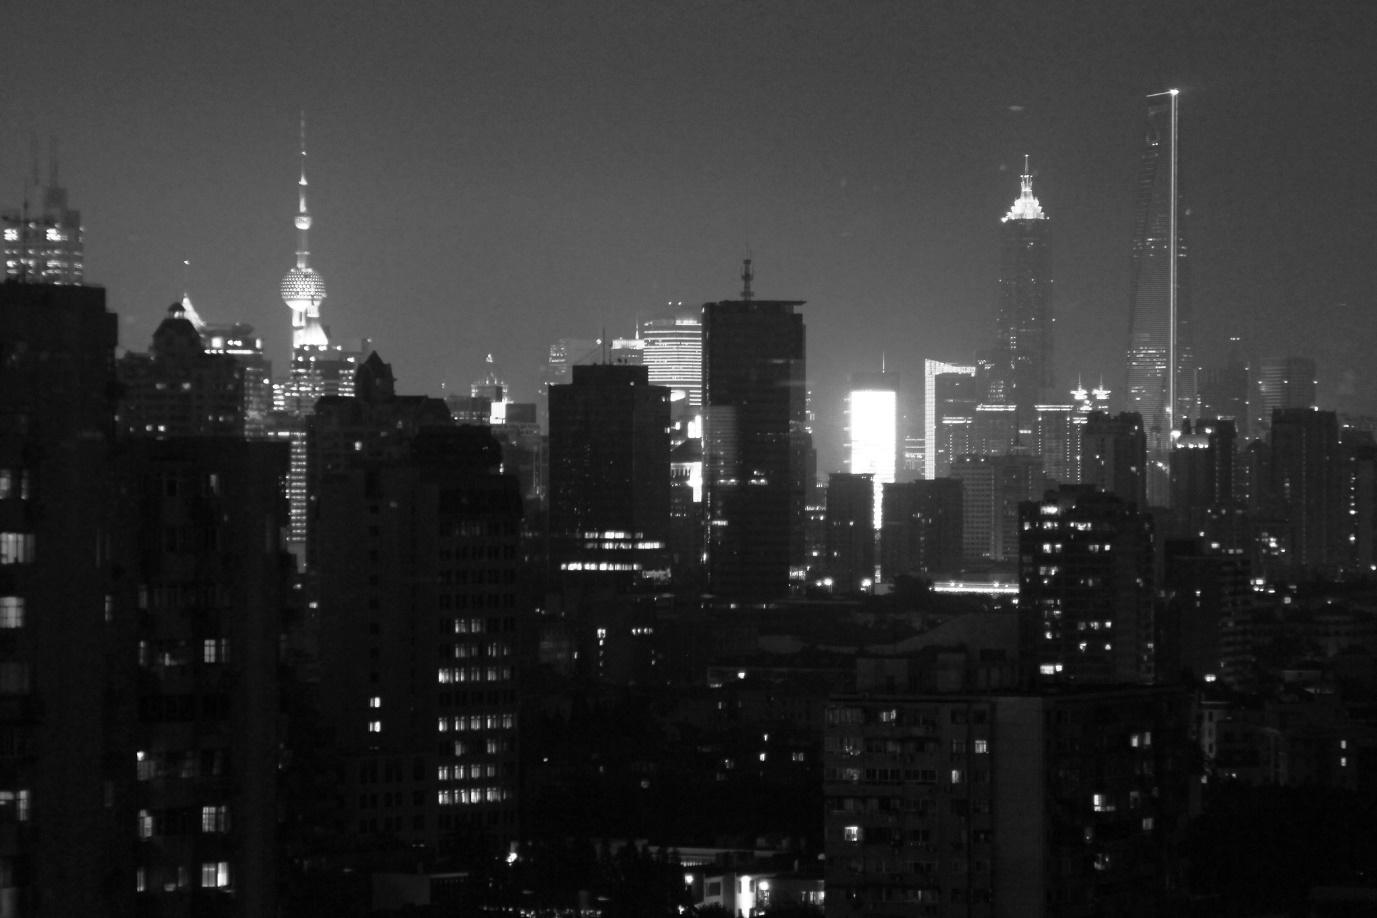 Shanghai city skyline at night